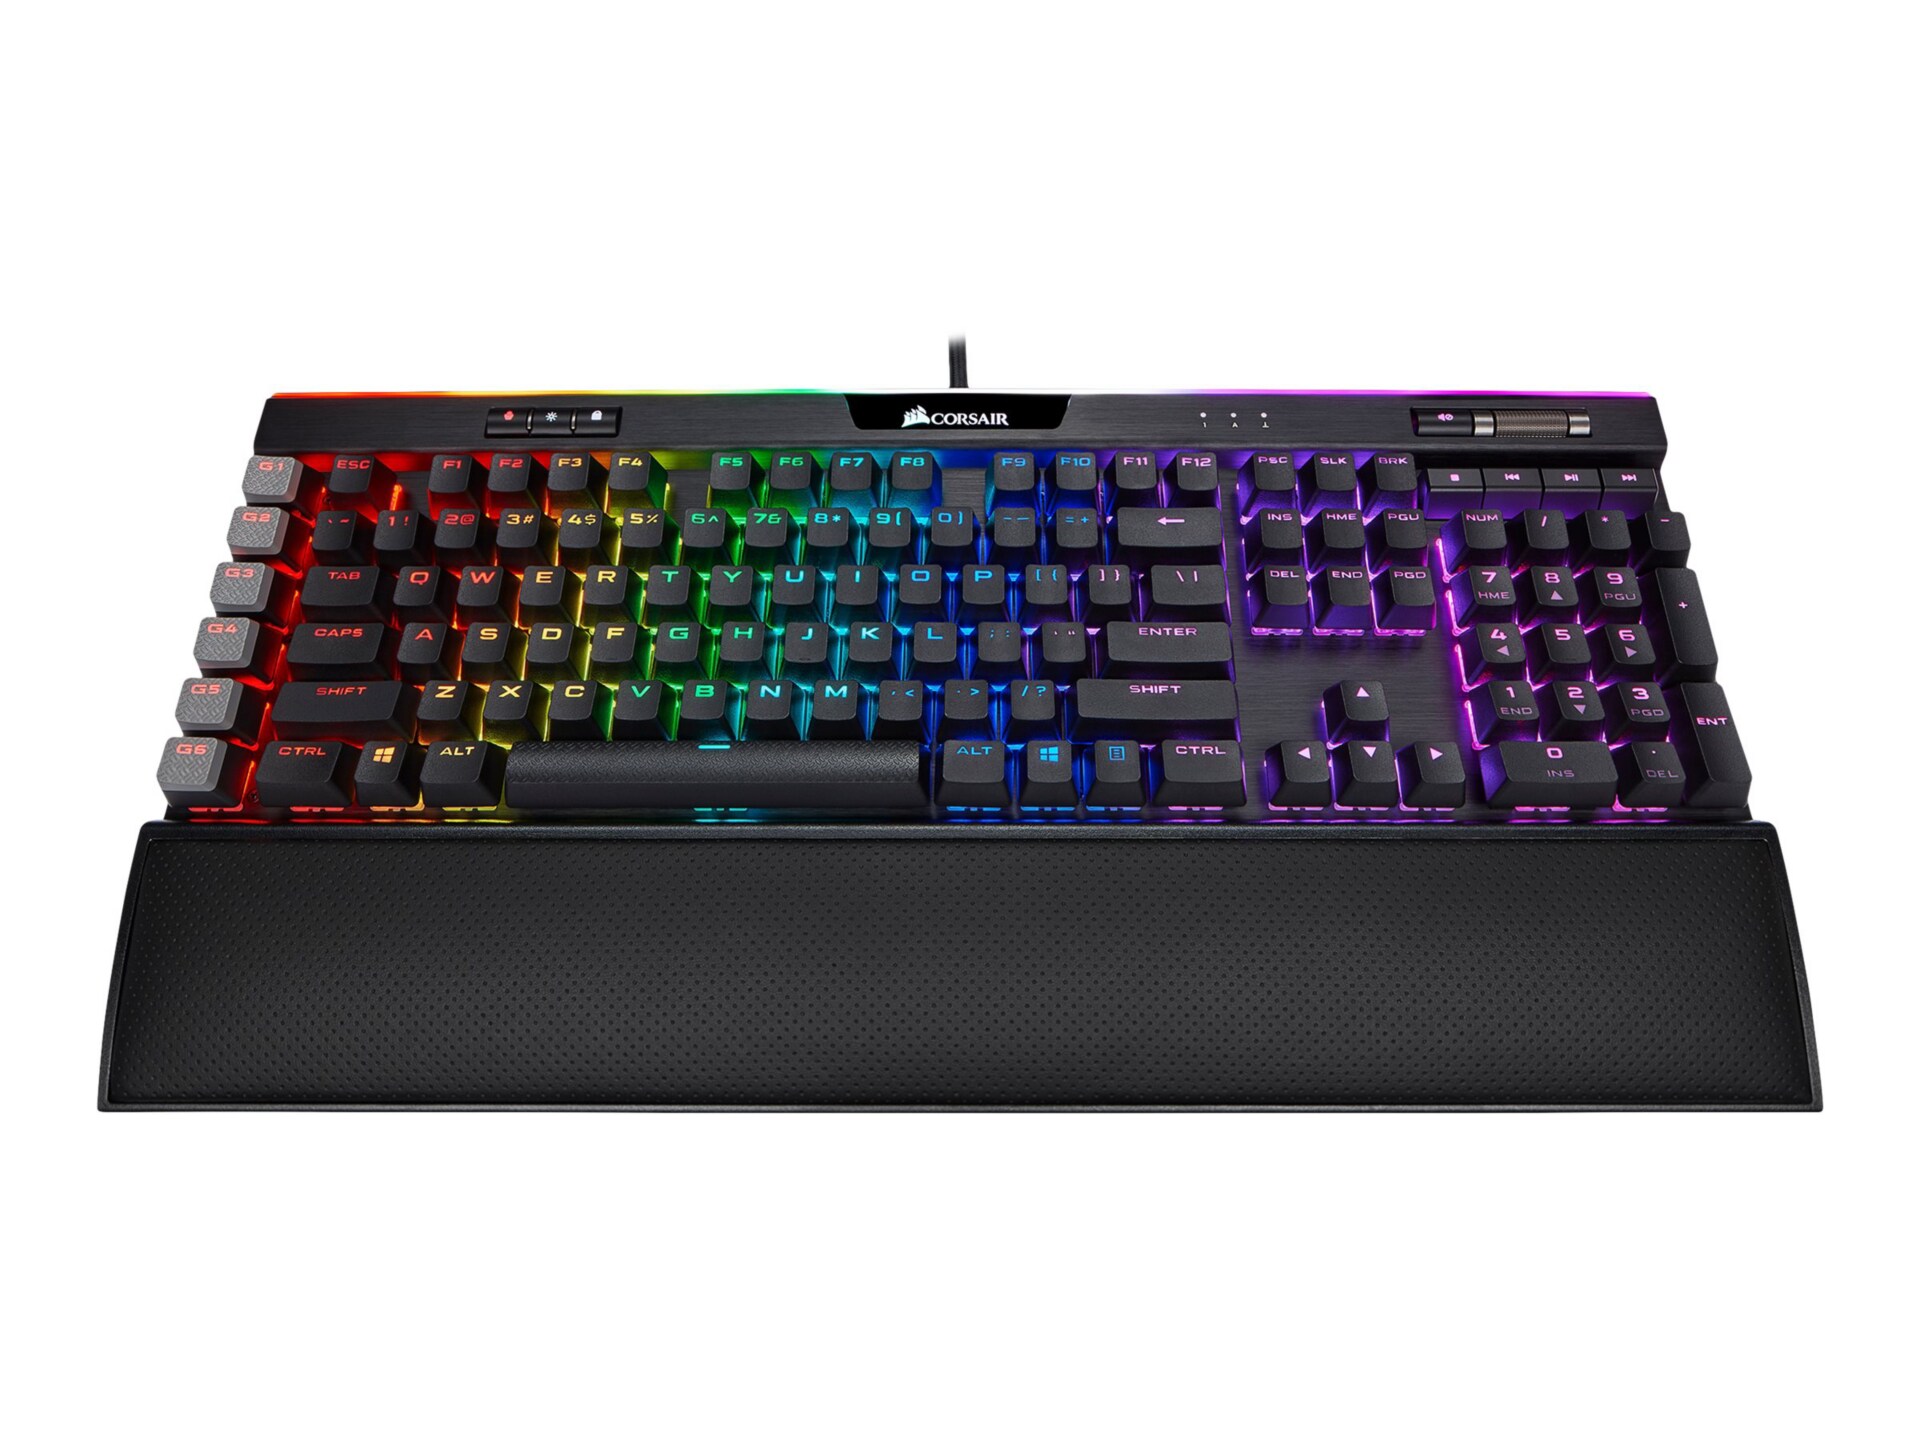 CORSAIR Gaming K95 RGB PLATINUM XT - keyboard - English - black